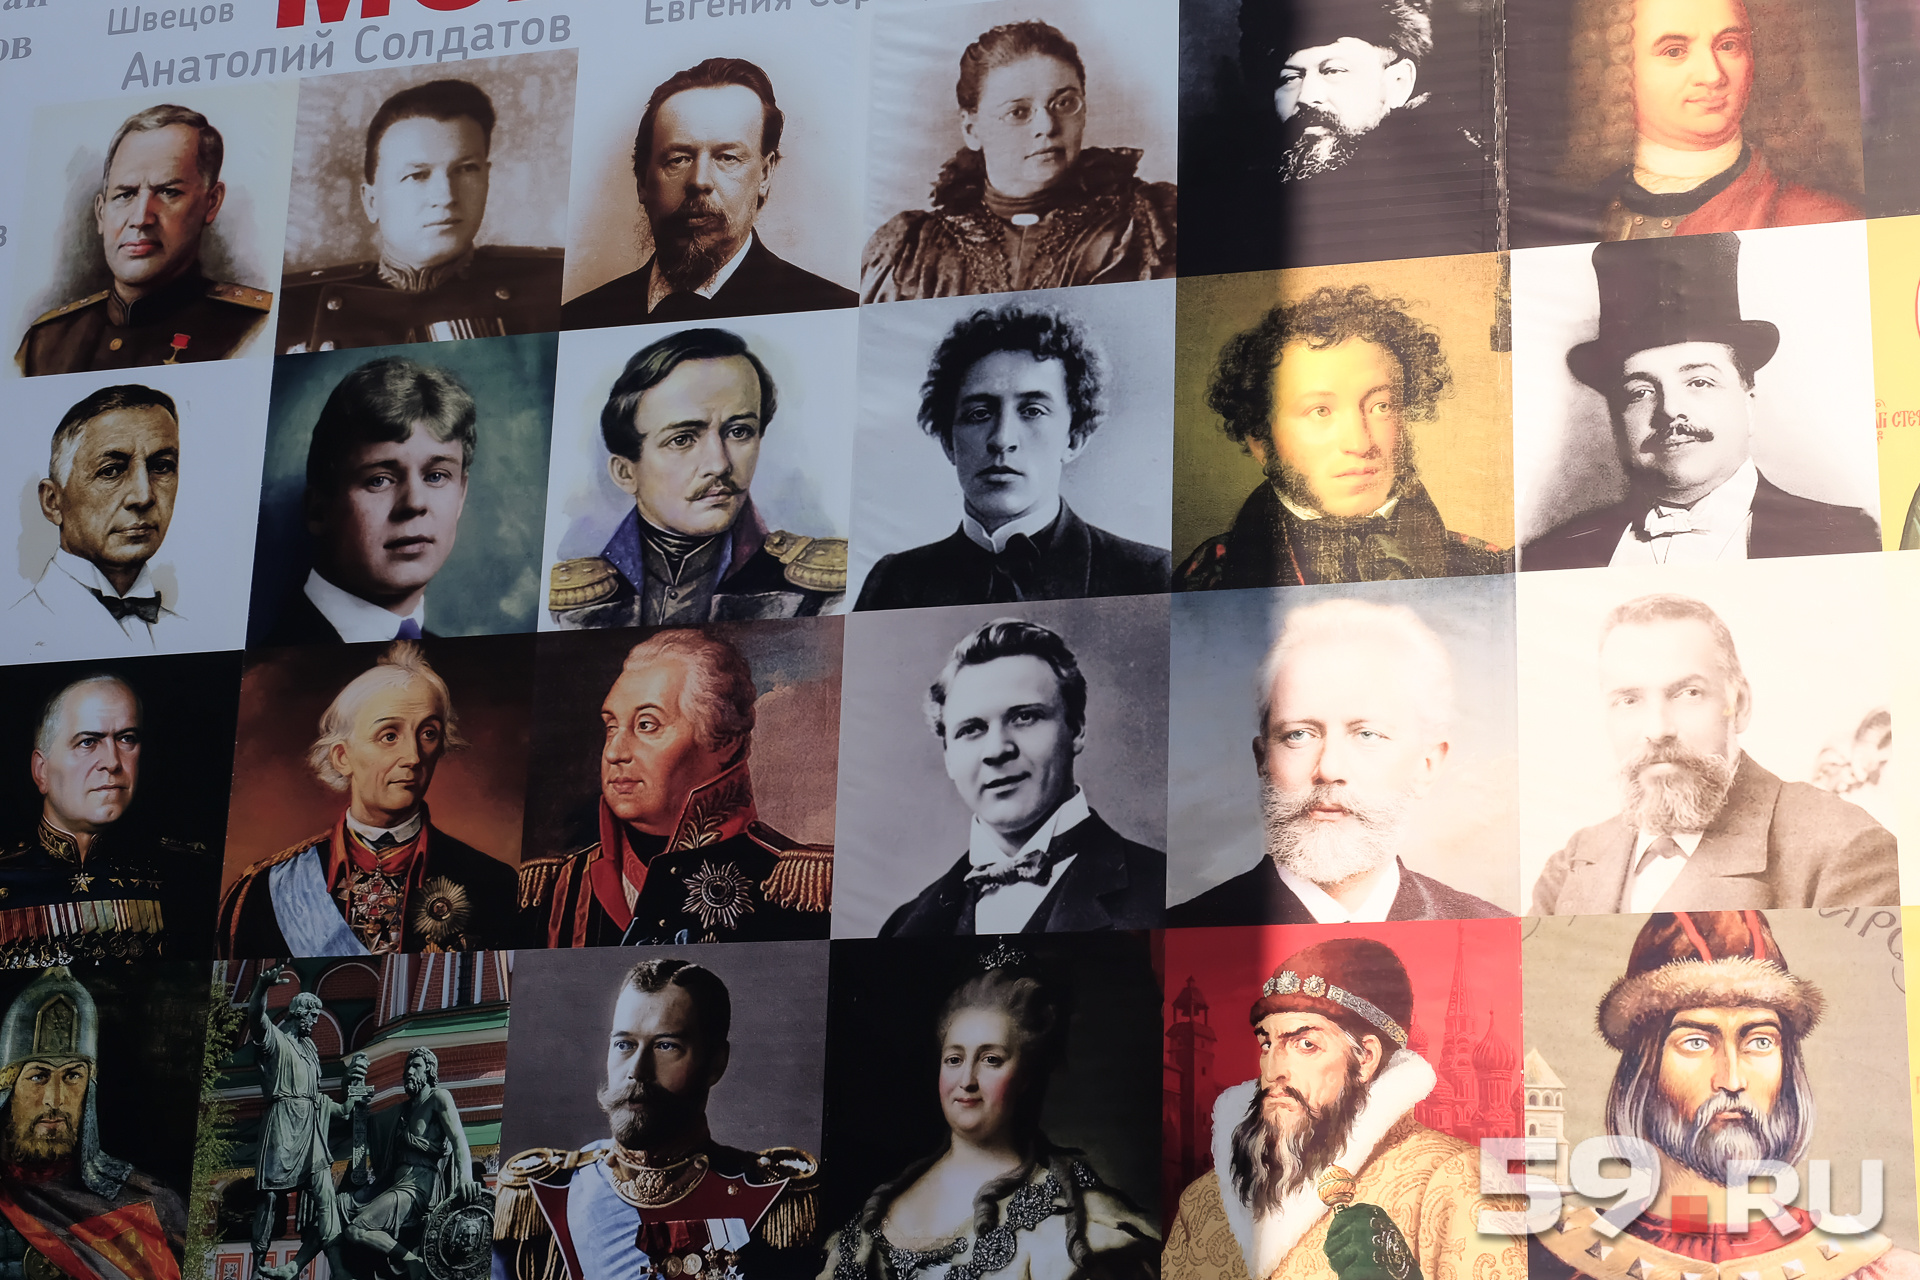 На плакате изображены портреты известных российских и советских деятелей